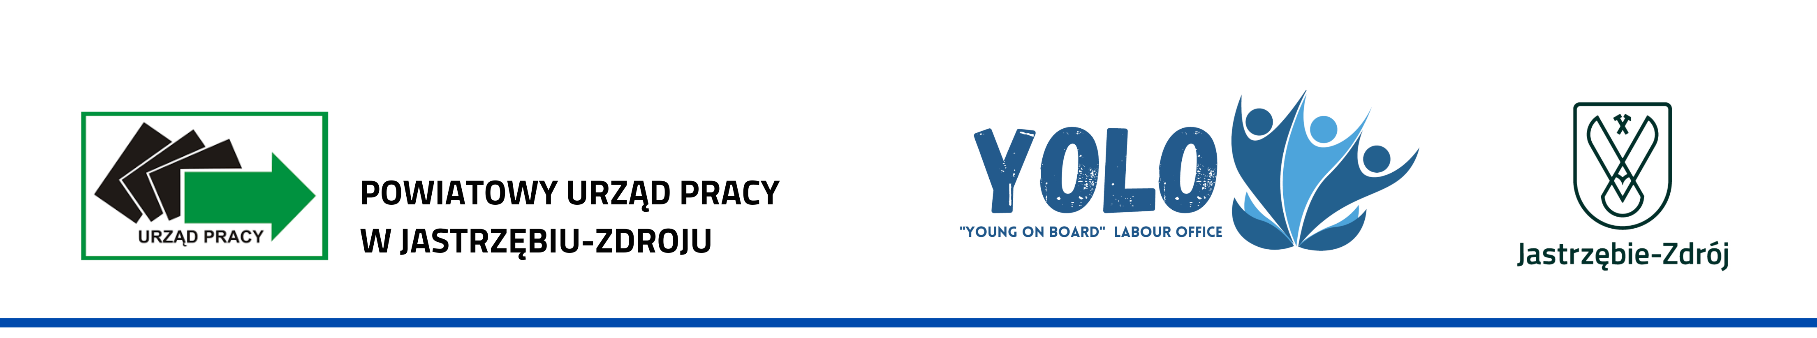 Nagłówek dokumentu projektu pilotażowego YOLO Young on board Labour Office zawierający logo PUP, logo YOLO i logo Urzędu Miasta Jastrzębie-Zdrój